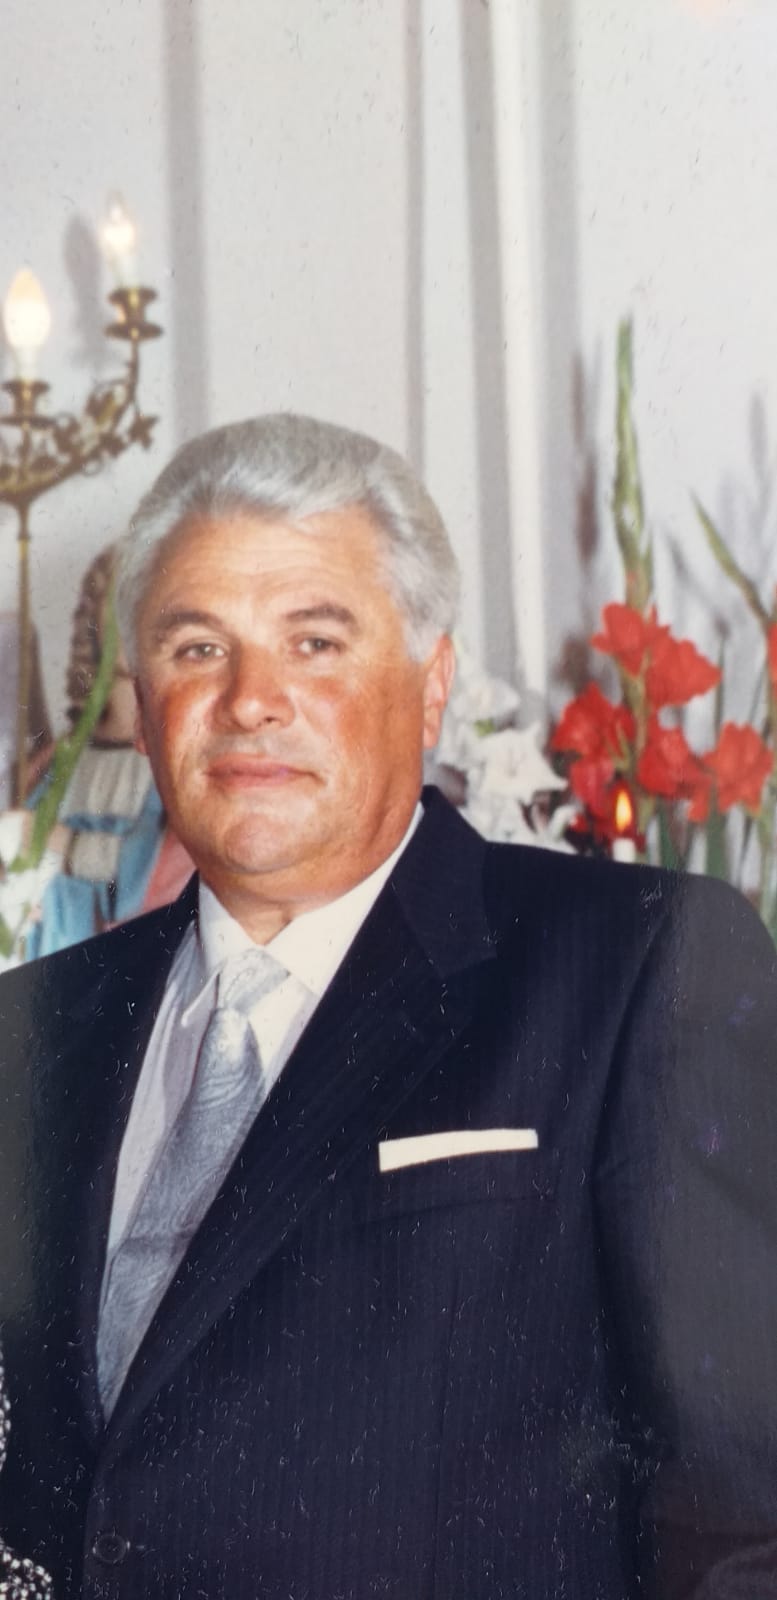 Petrosino, deceduto l’ex sindaco Gaspare Valenti. Fu primo cittadino dal 6 luglio 1989 al 30 marzo 1991